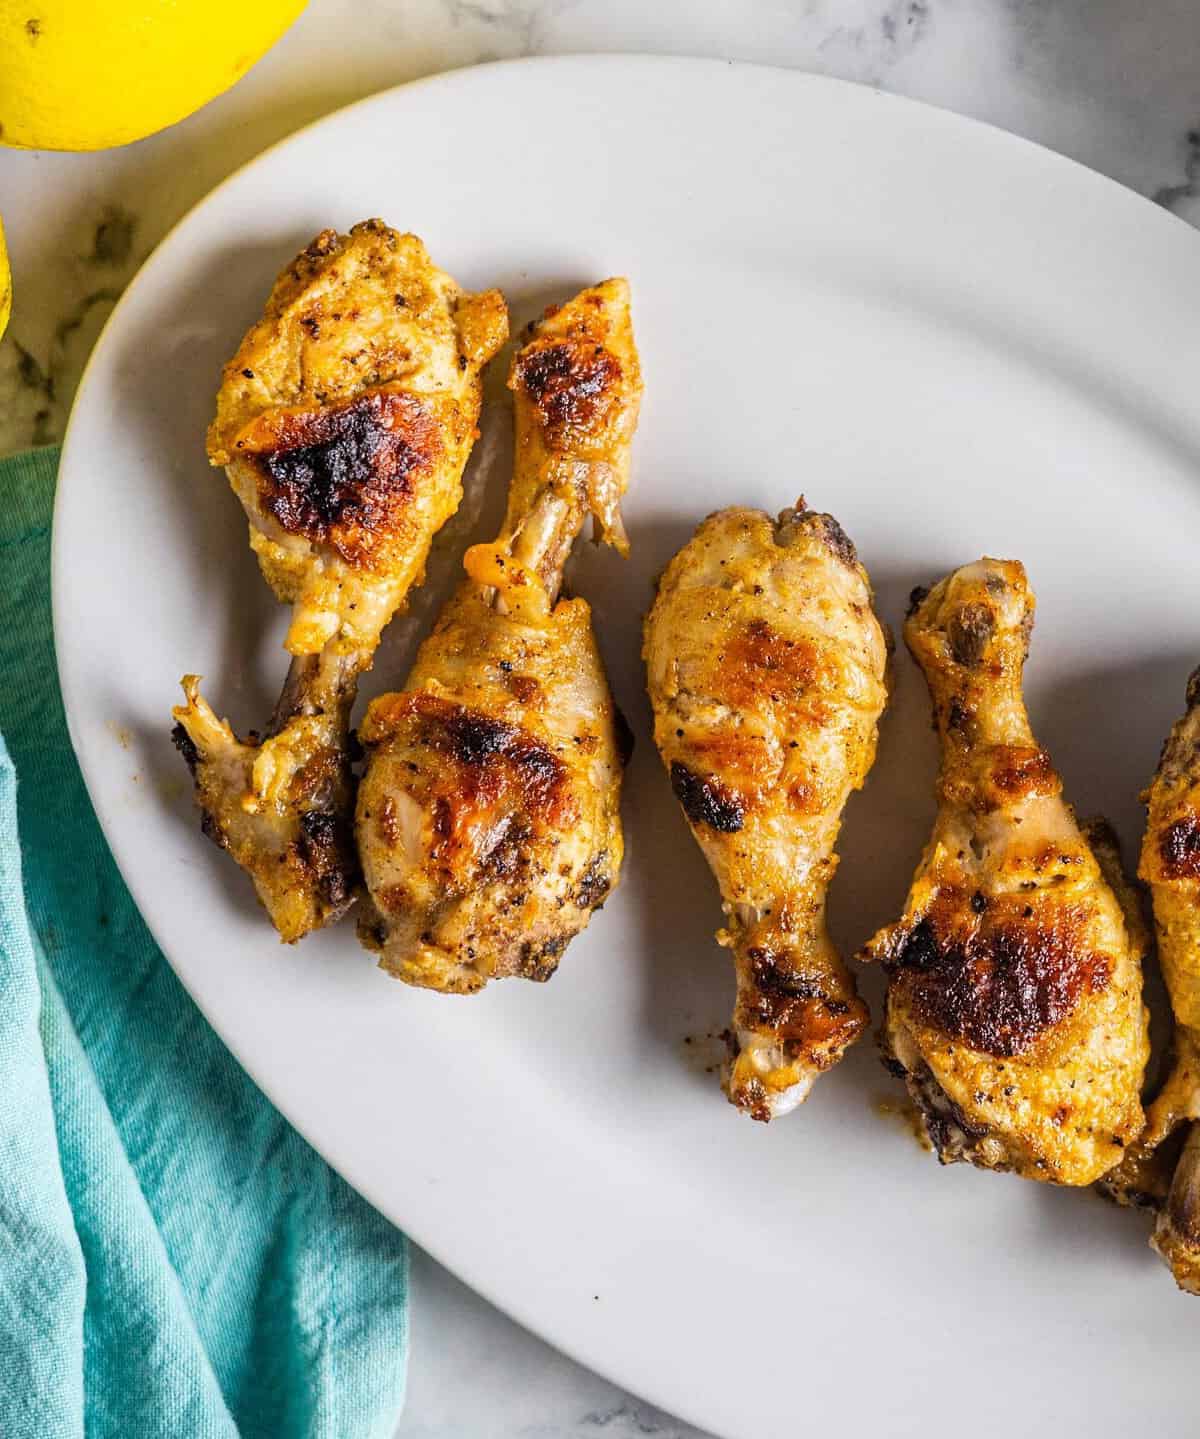 Mouth-Watering Chicken Marinade Recipe – Deliciously Juicy!